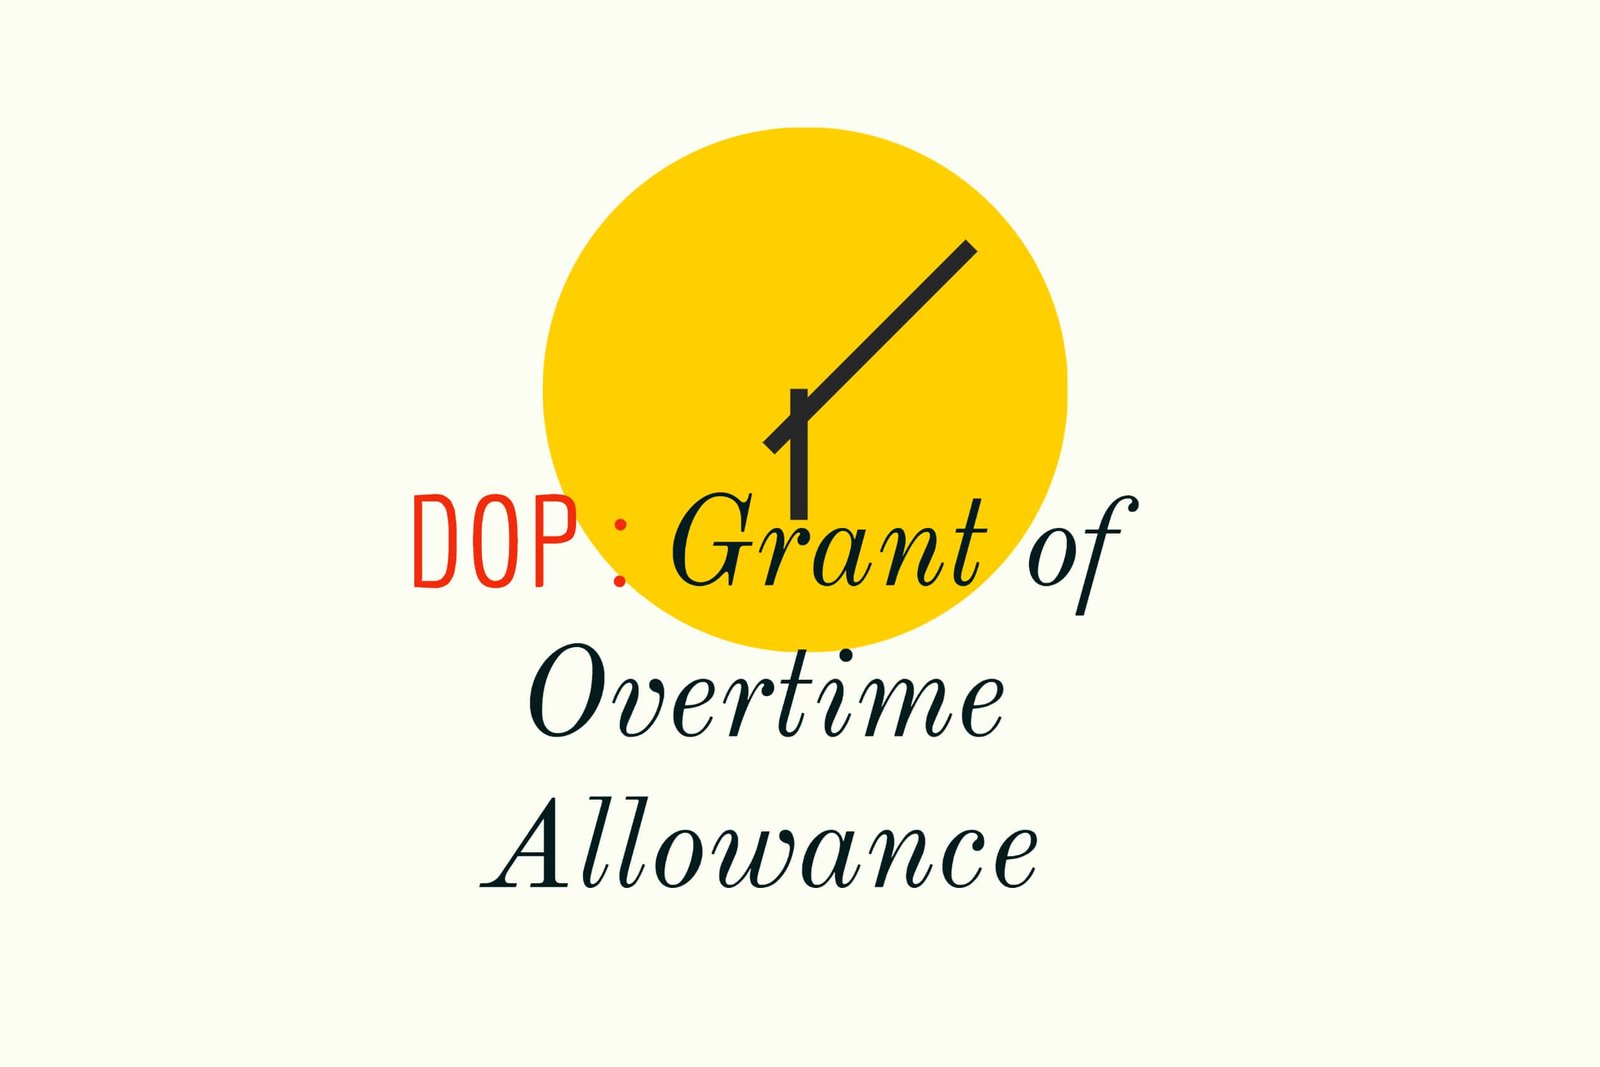 DOP - Grant of Overtime Allowance